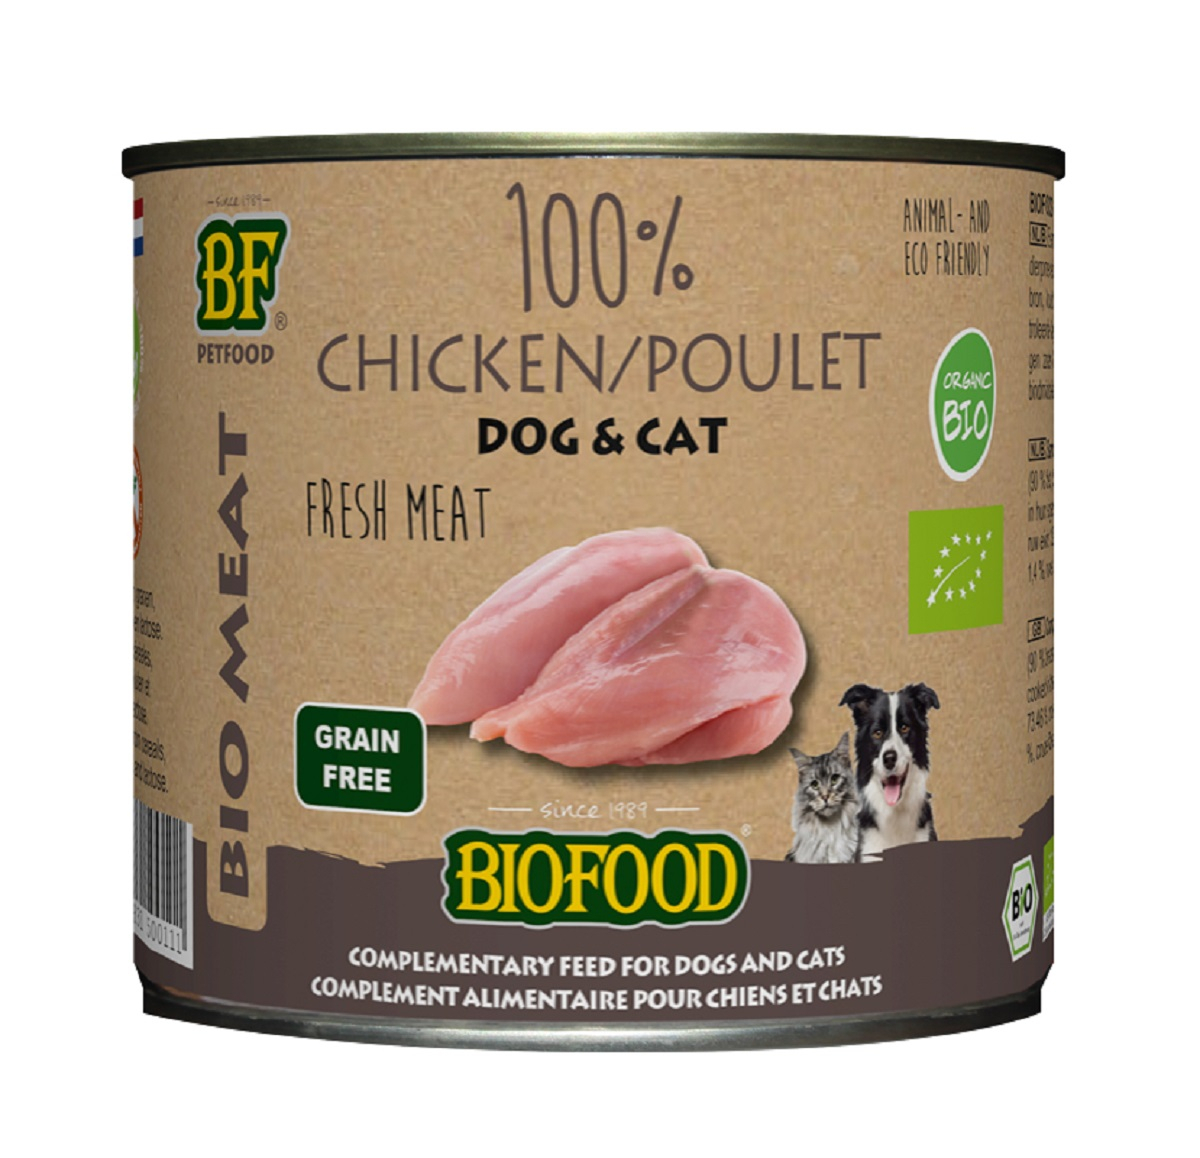 BF PETFOOD - BIOFOOD paté 100% carne de frango BIO para cão e gato